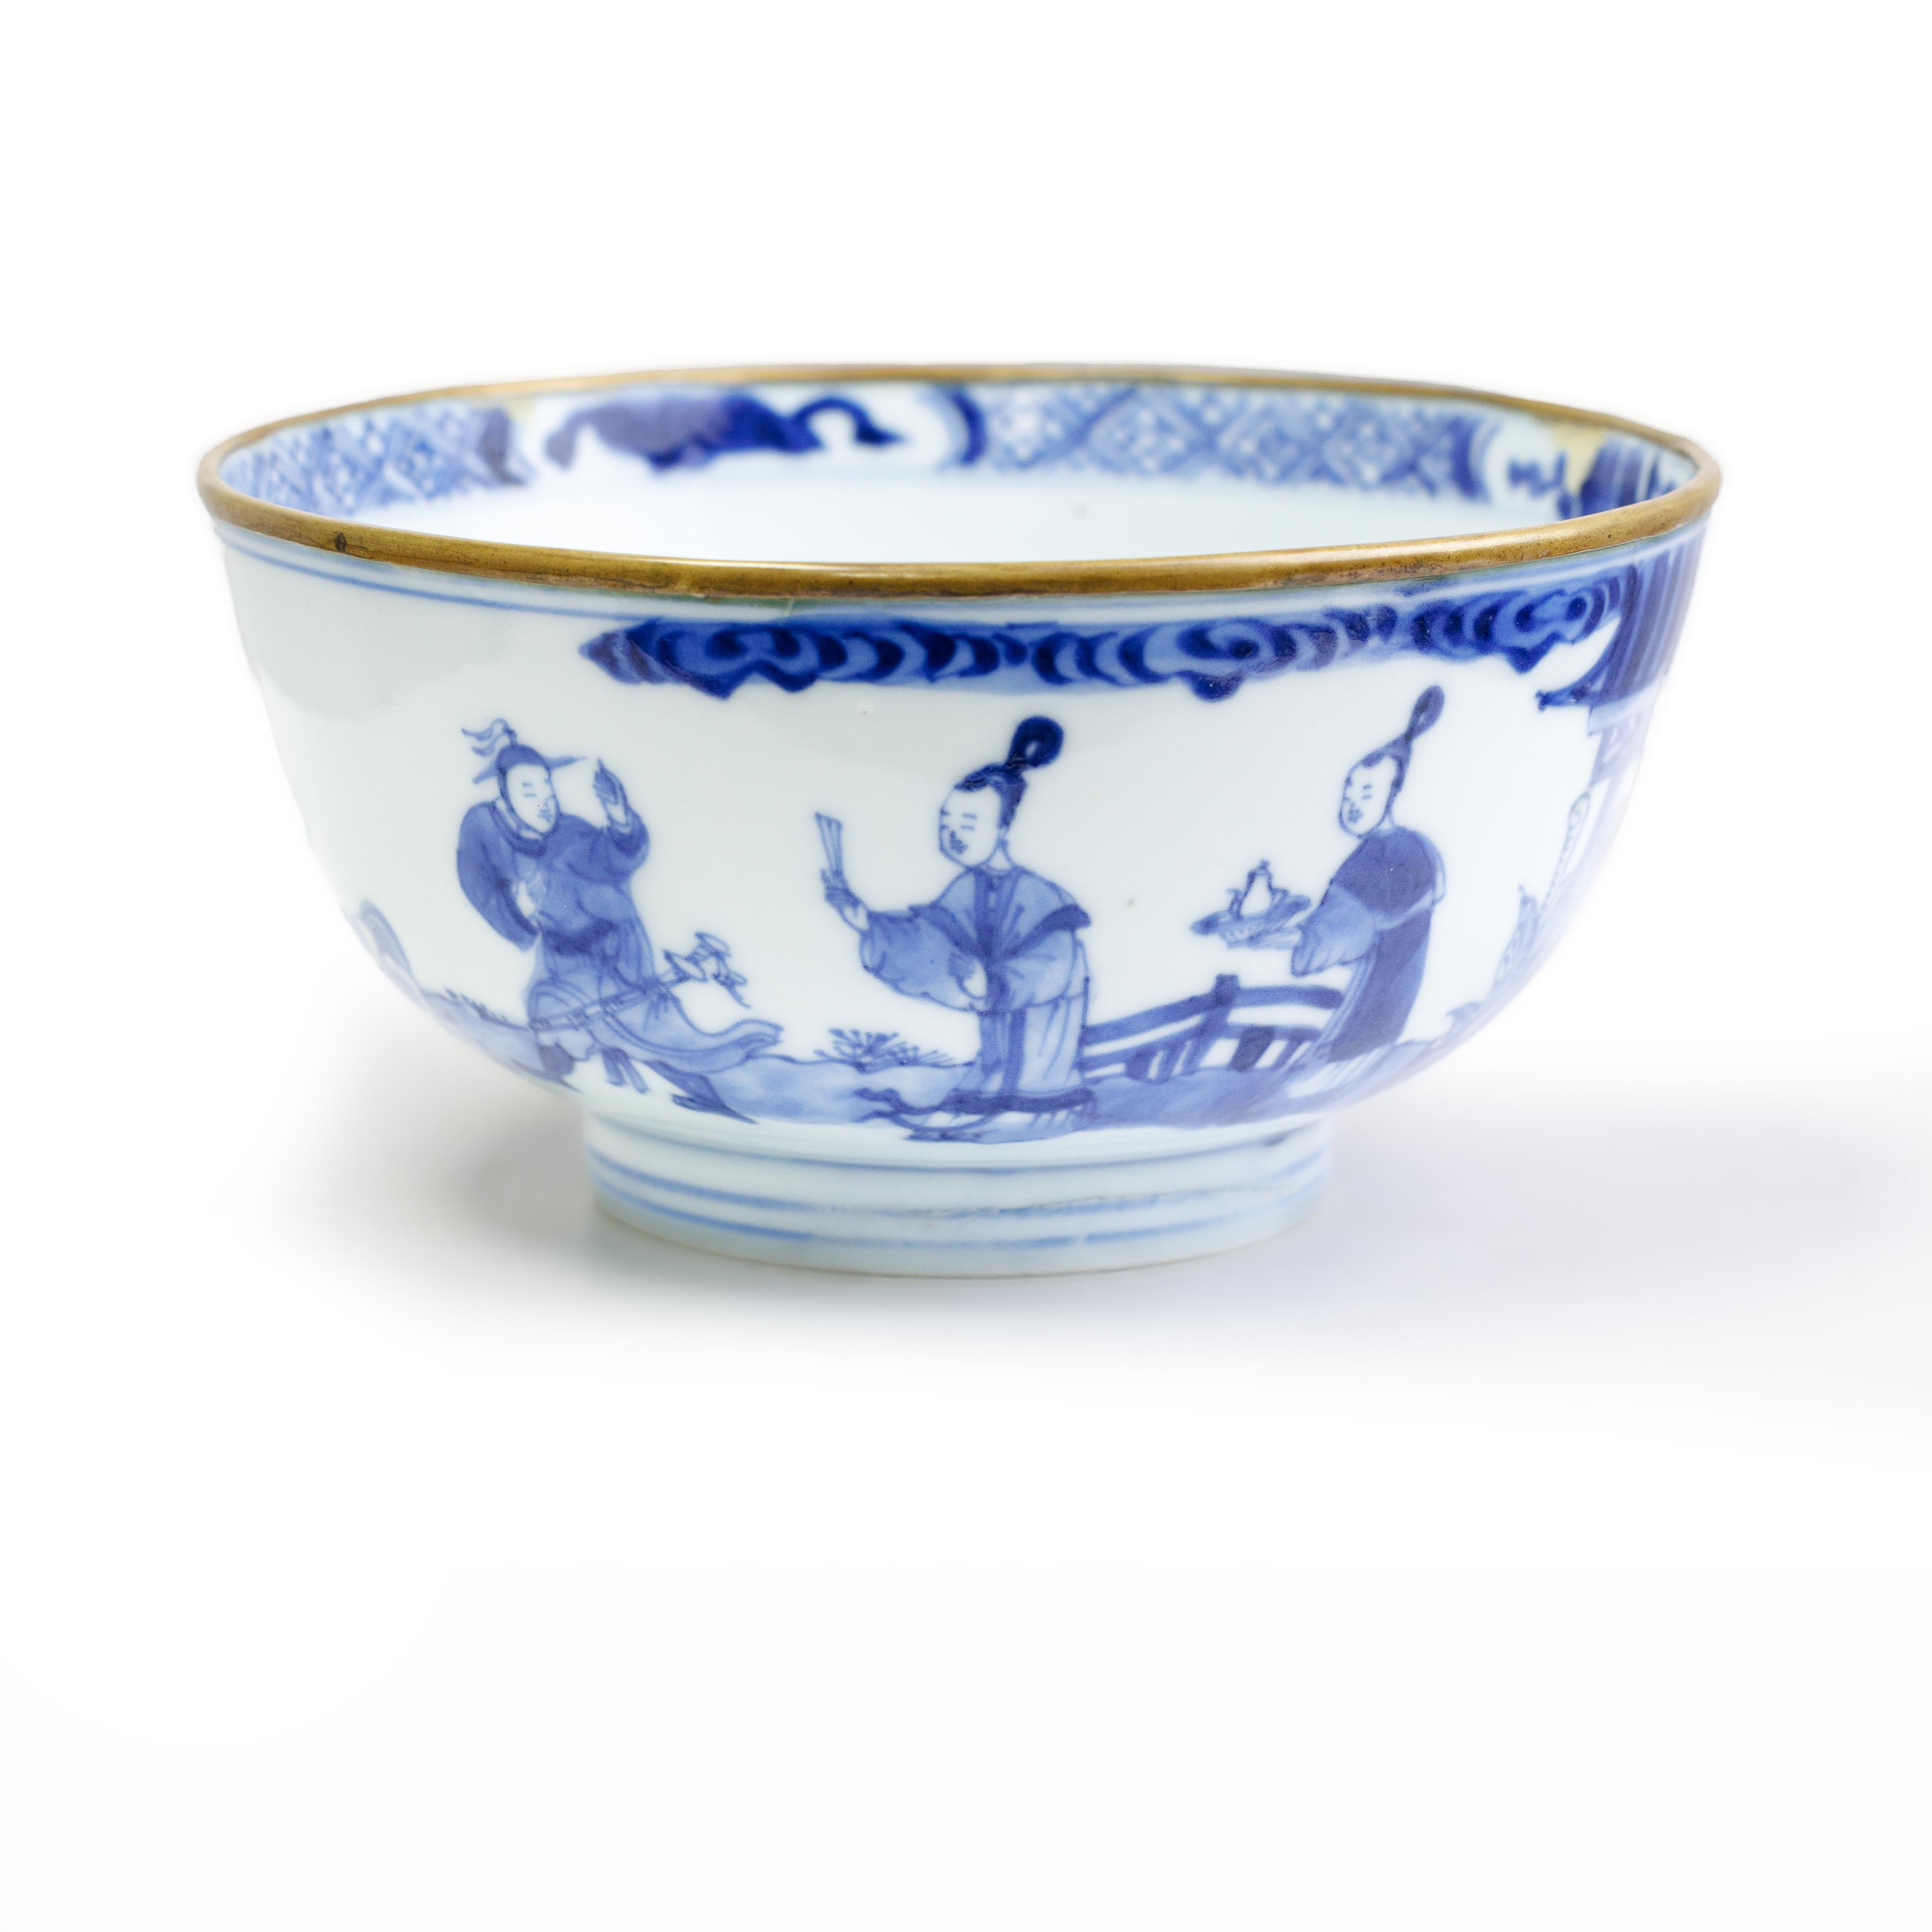 A Chinese blue and white 'Xi xiang ji' bowl Qing dynasty, Kangxi period, ruo shen zhen cang seal... - Image 2 of 4